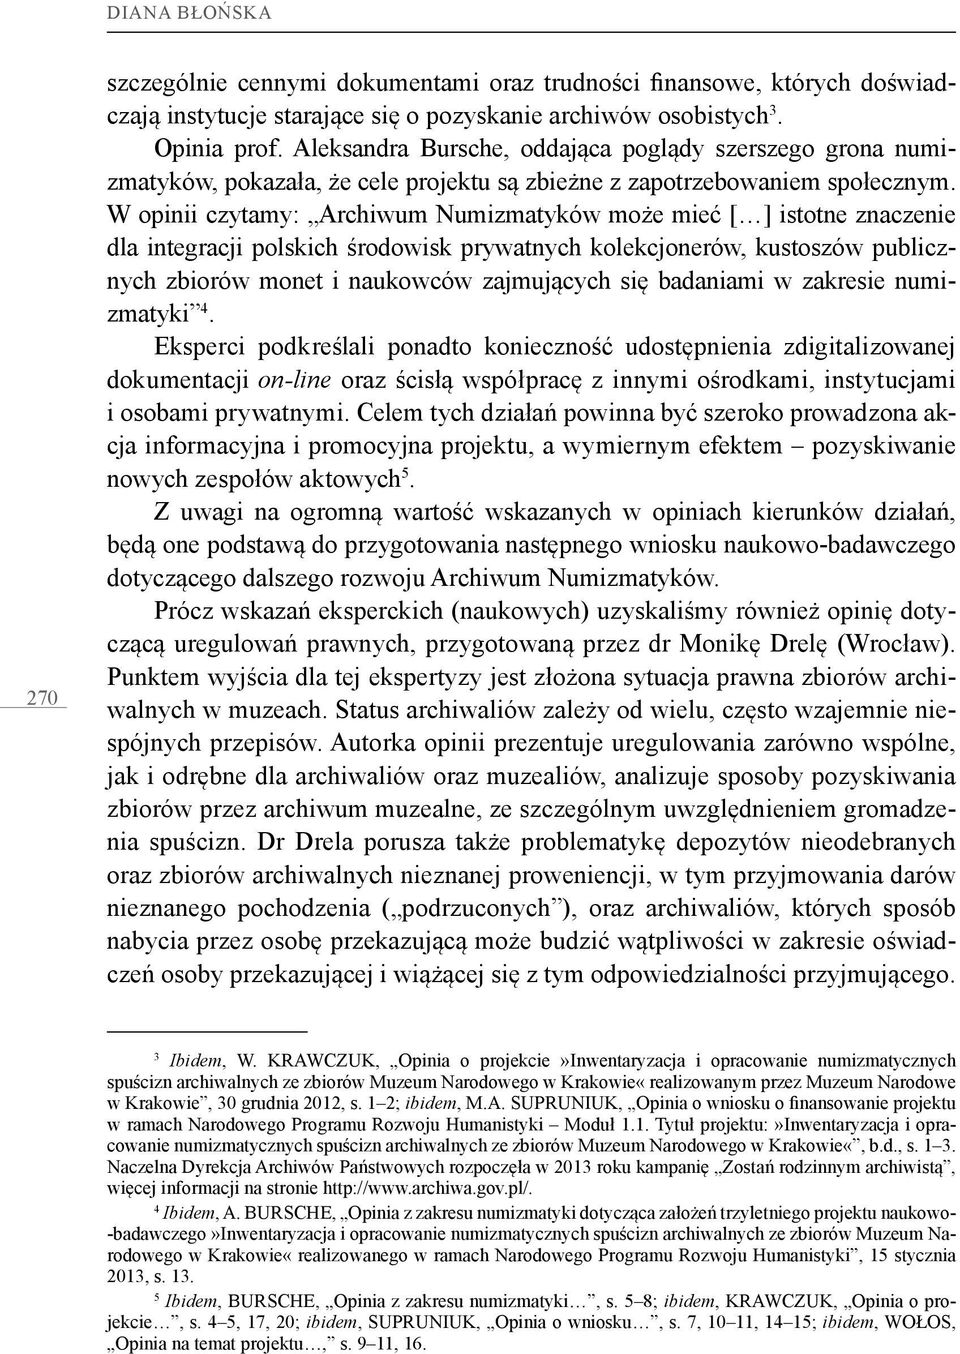 W opinii czytamy: Archiwum Numizmatyków może mieć [ ] istotne znaczenie dla integracji polskich środowisk prywatnych kolekcjonerów, kustoszów publicznych zbiorów monet i naukowców zajmujących się